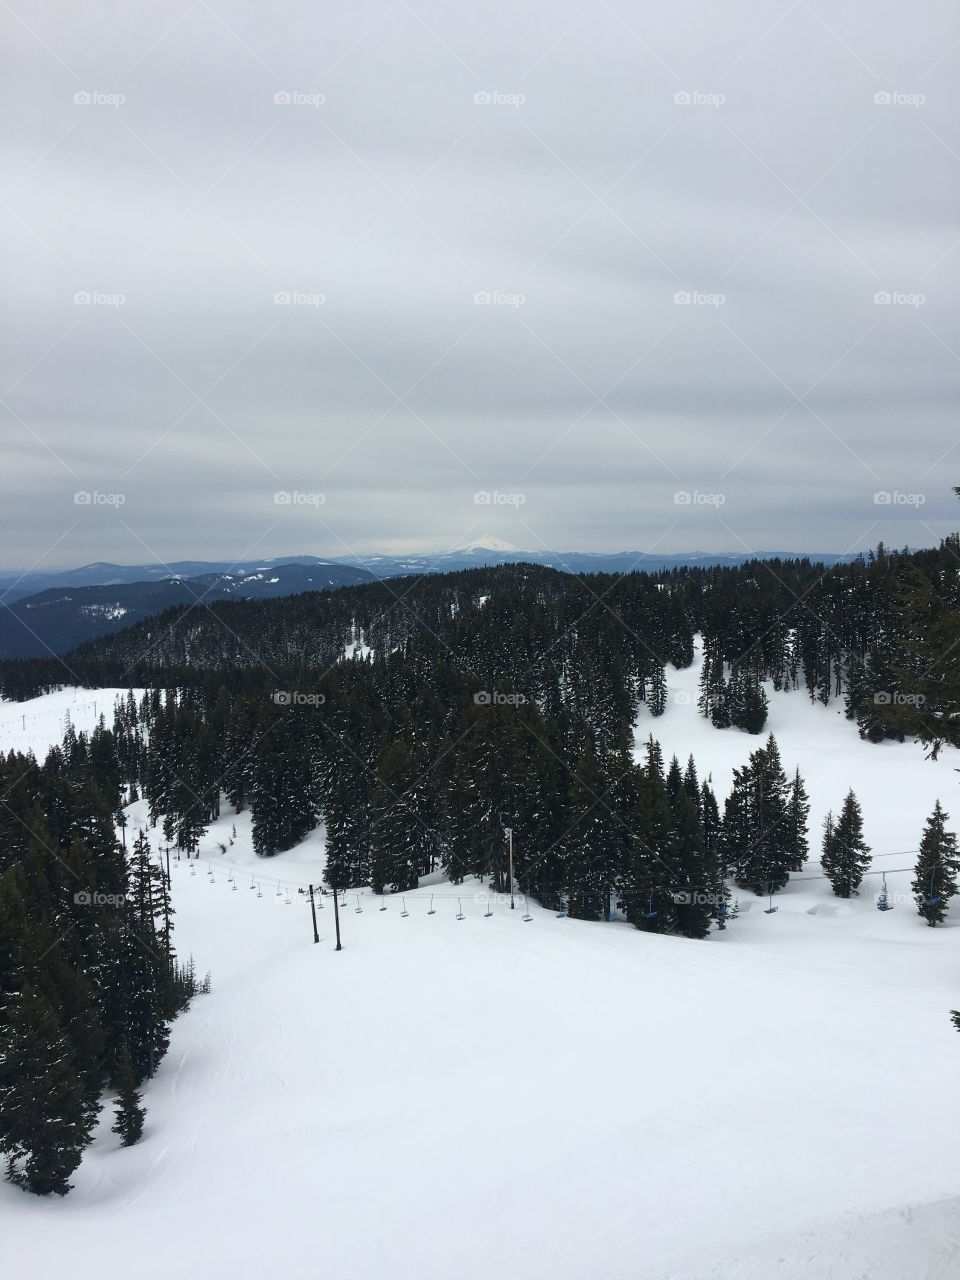 Winter Ski Resort